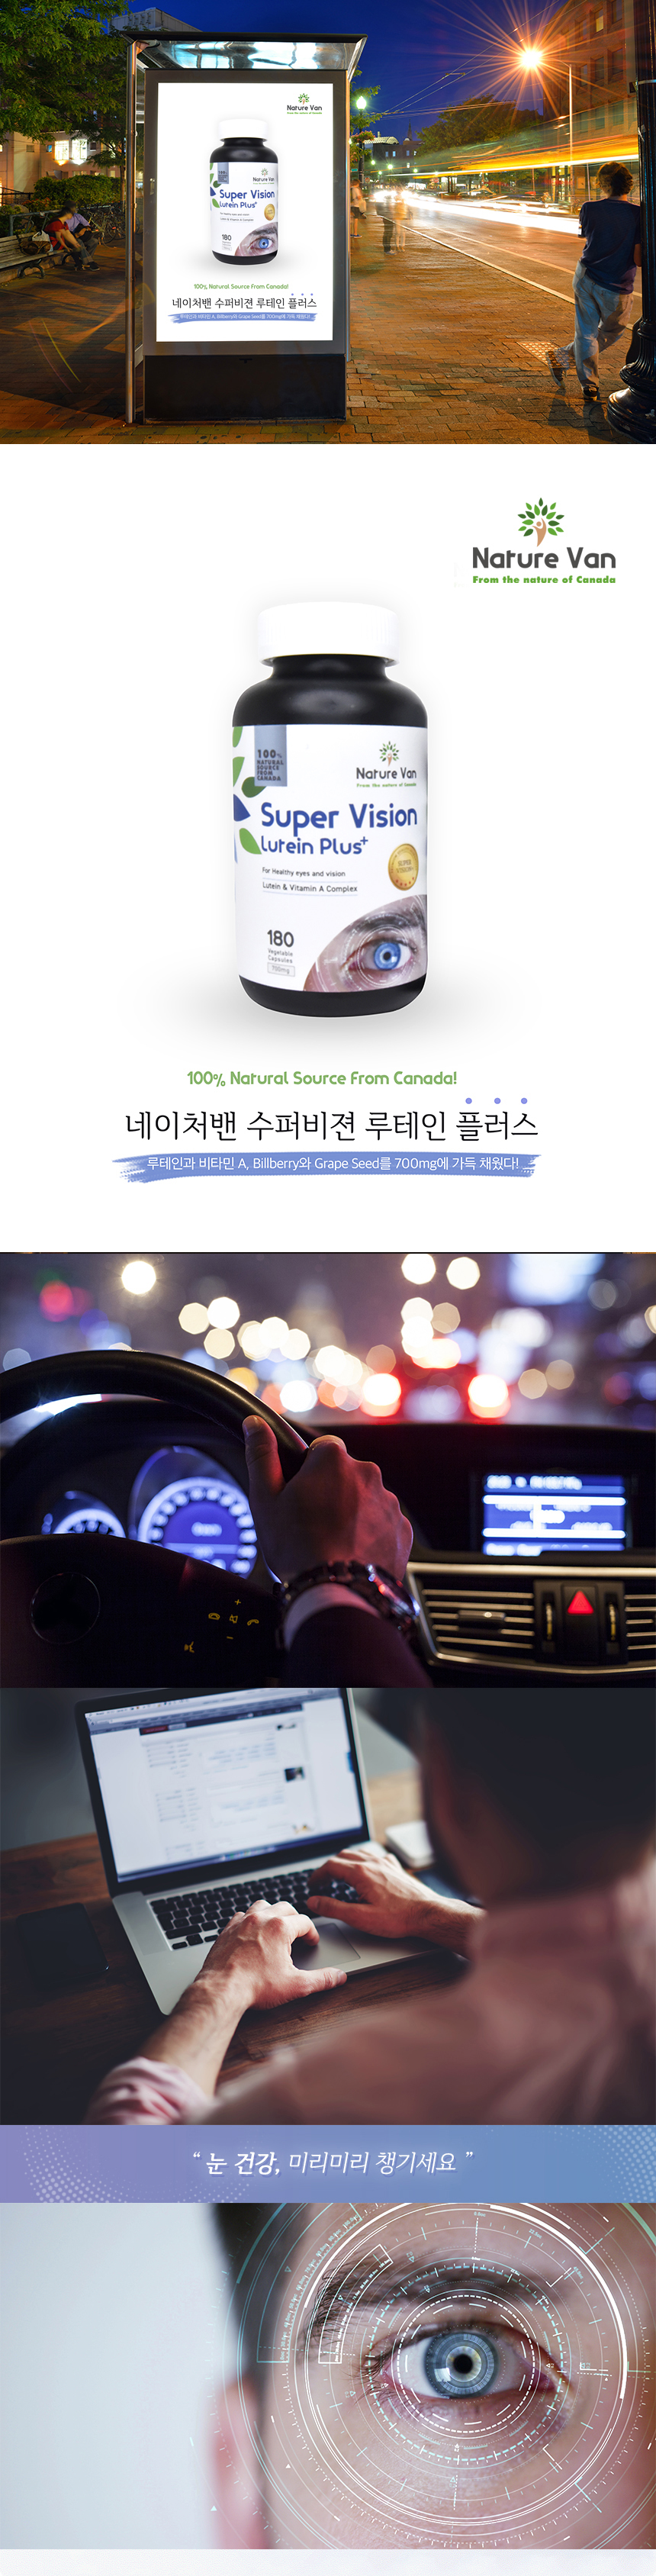 네이처밴 캐나다 시서스 효과만점!!   (+영양제 특가 공구 OPEN)